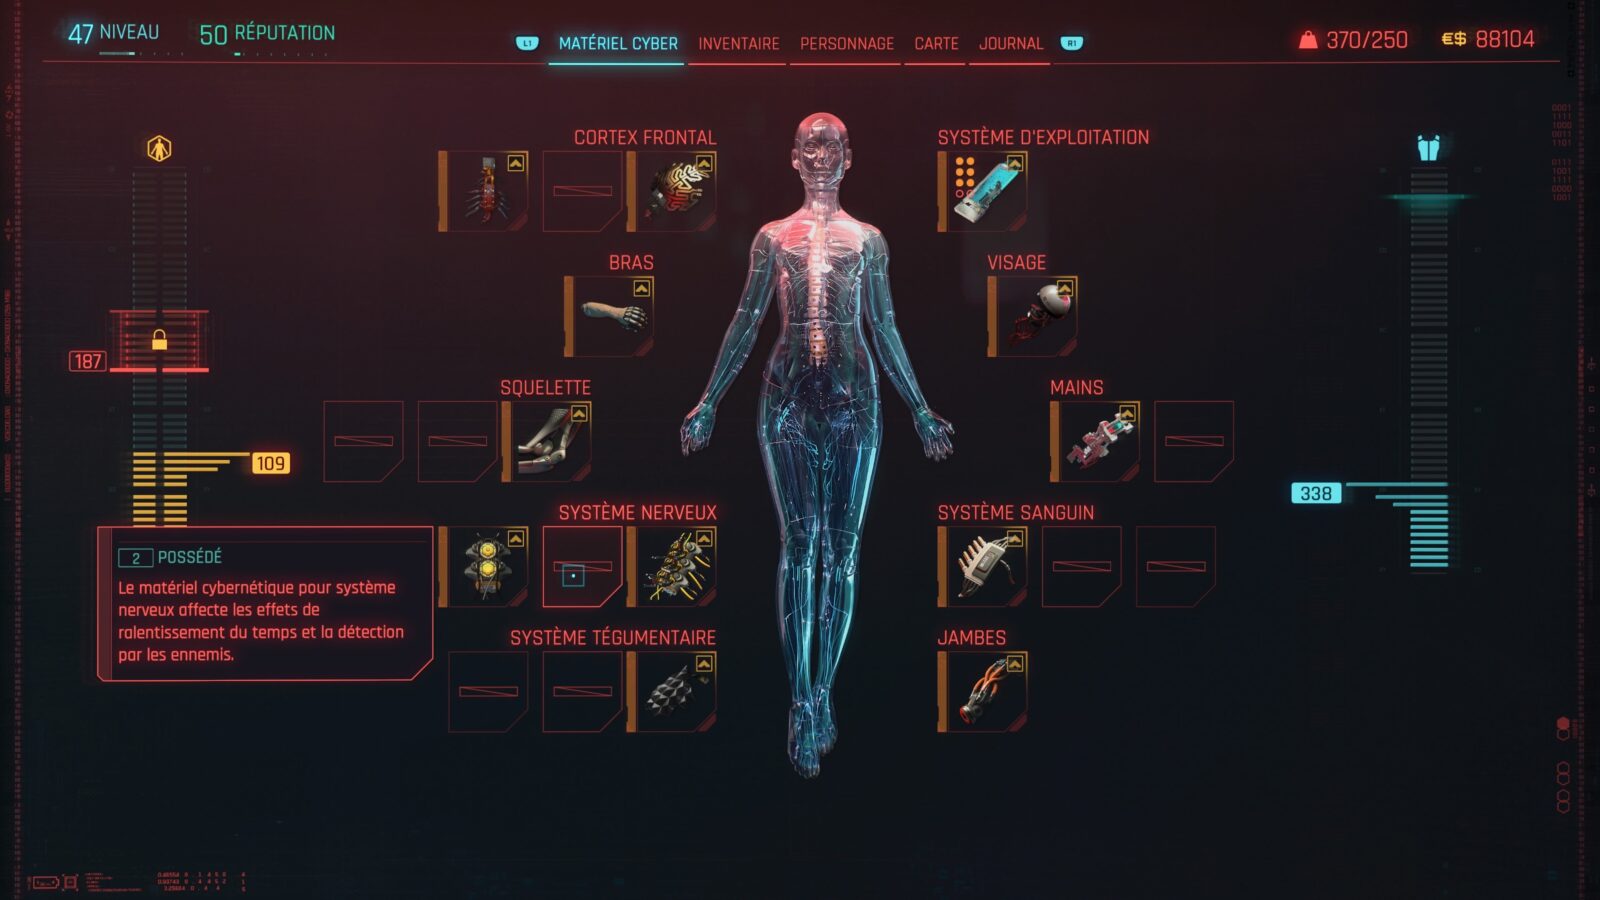 Cyberpunk 2077 : Guide du nouveau système de materiel cyber 2.0 (Implants, armure, améliorations, capacité cyber...)